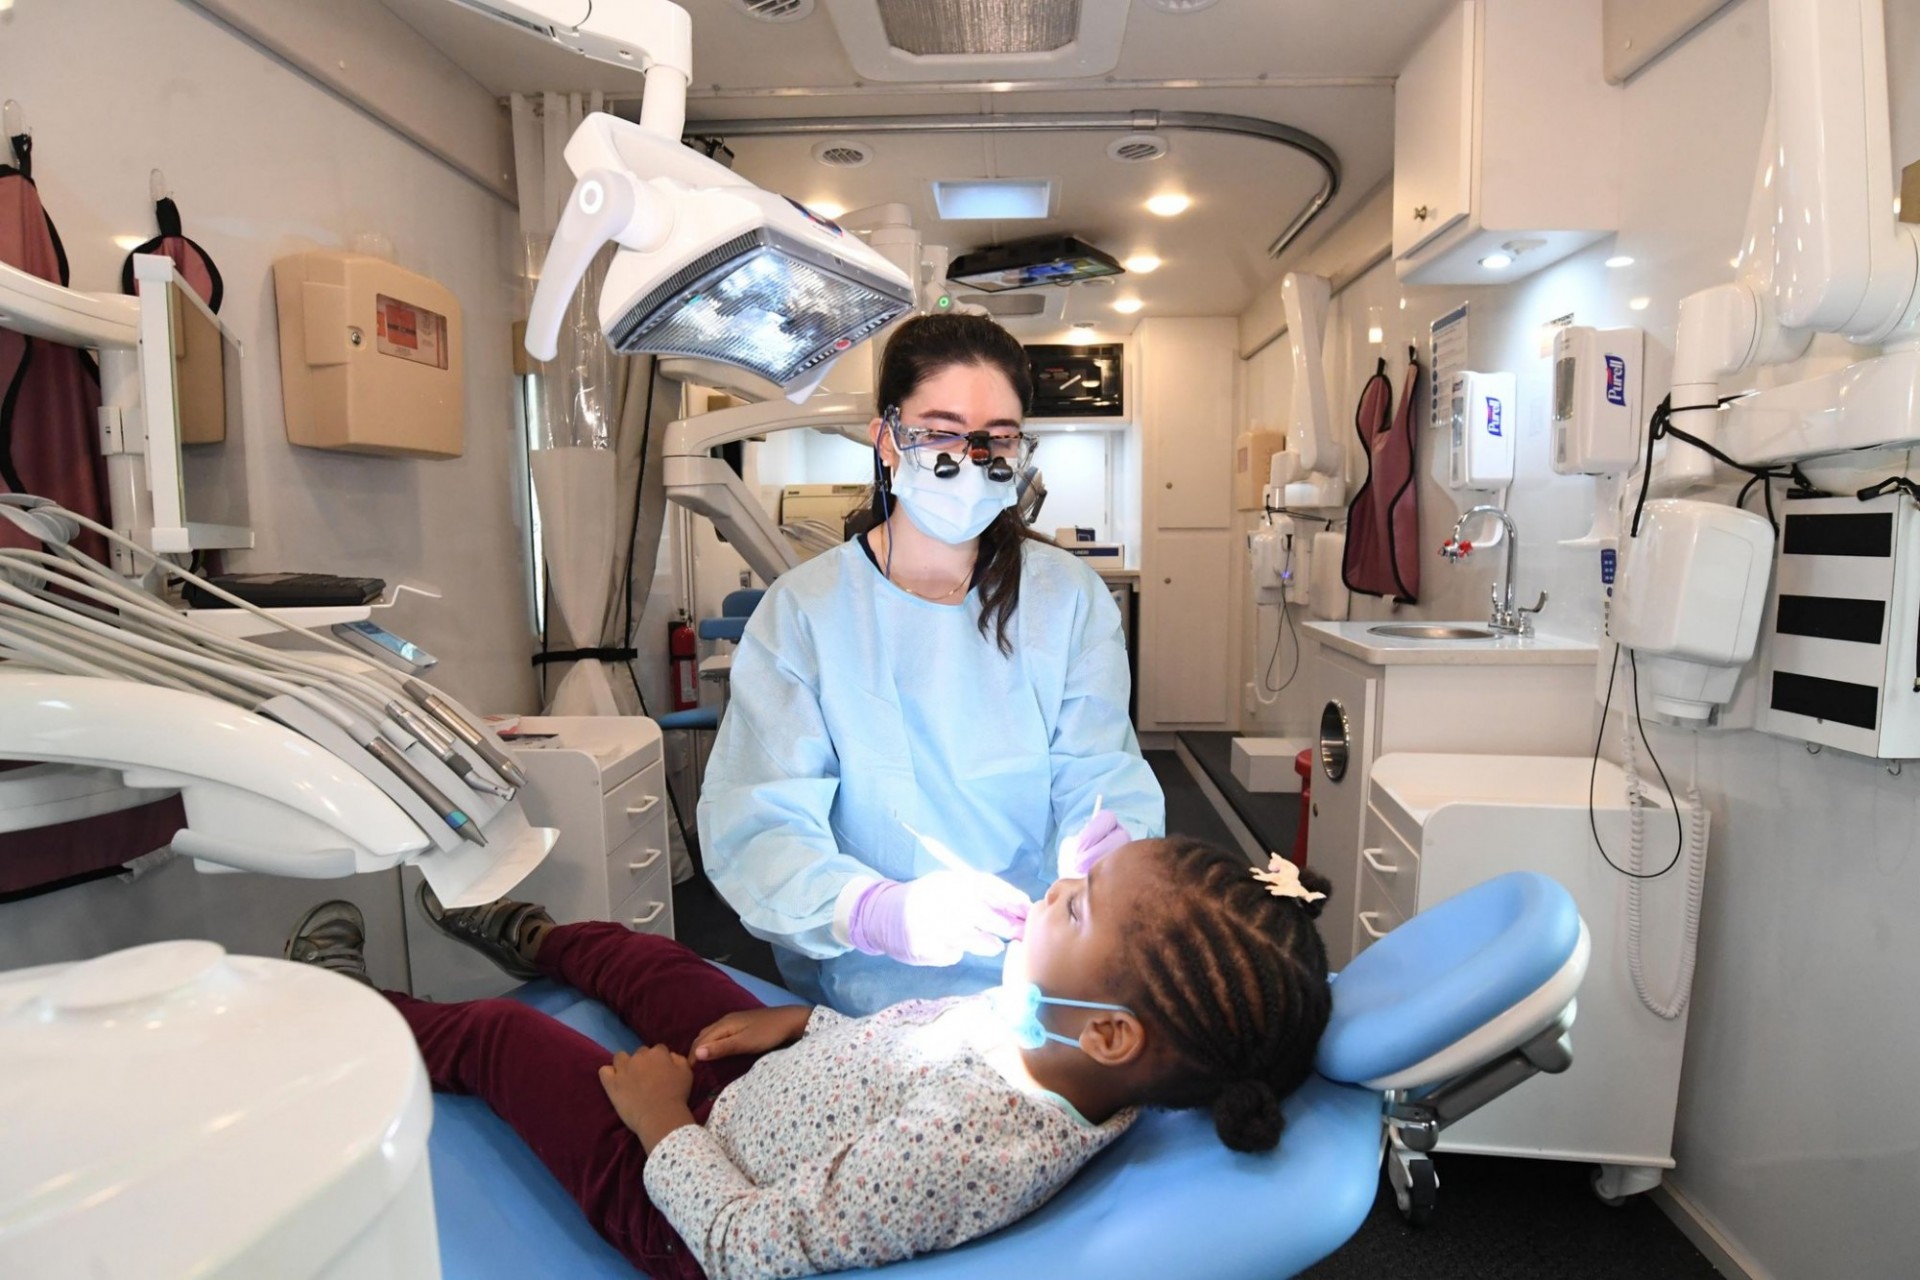 A dental procedure is undertaken in the mobile dental van. 